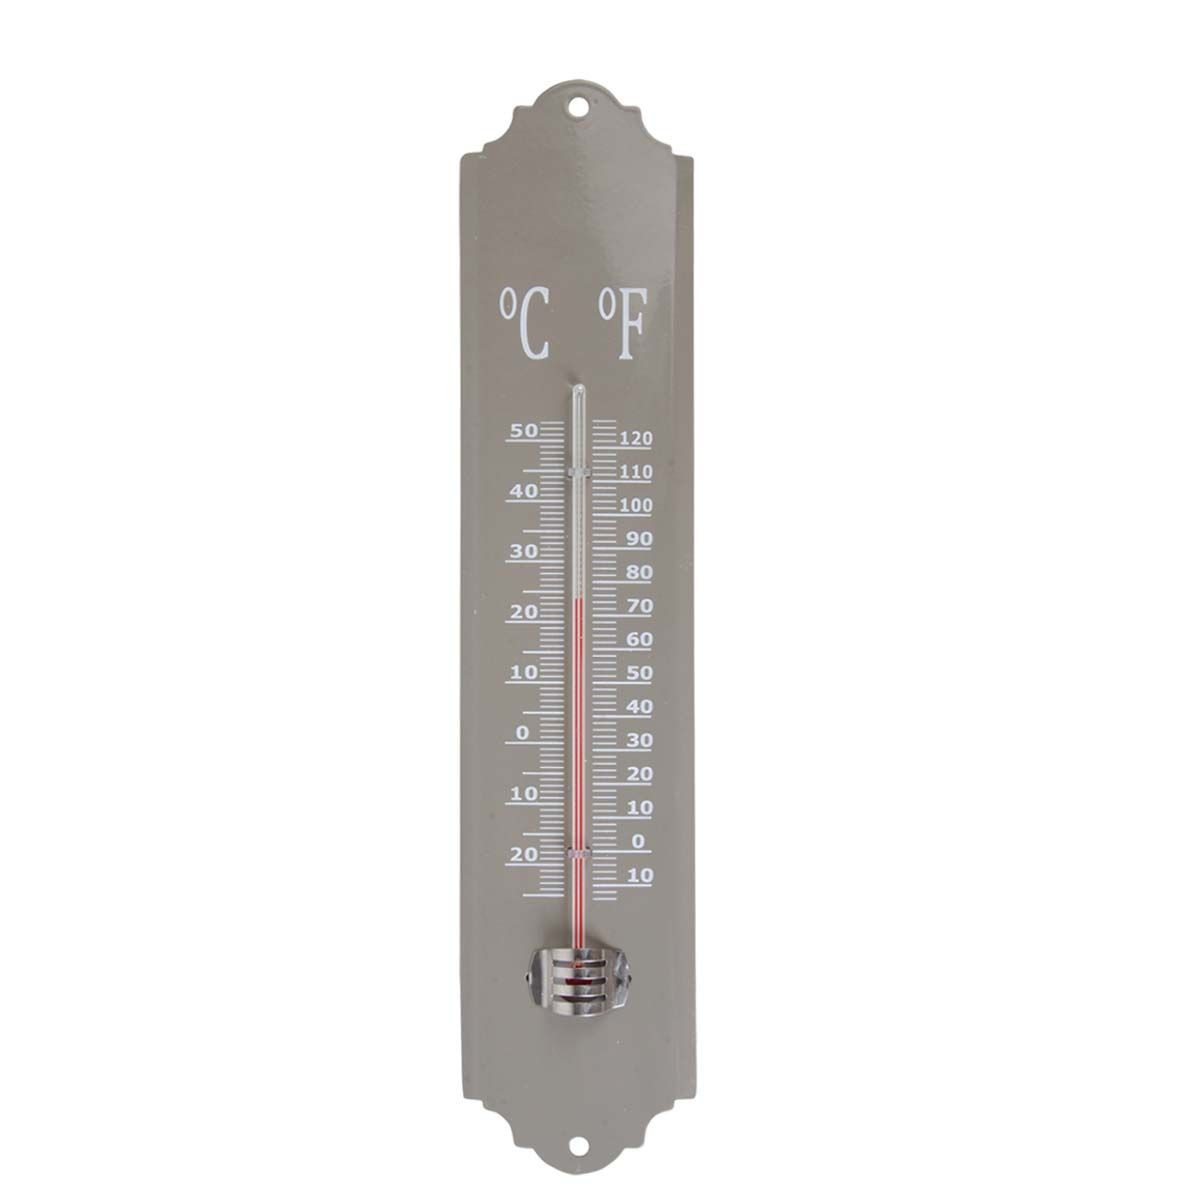 Thermomètre extérieur métal rouge